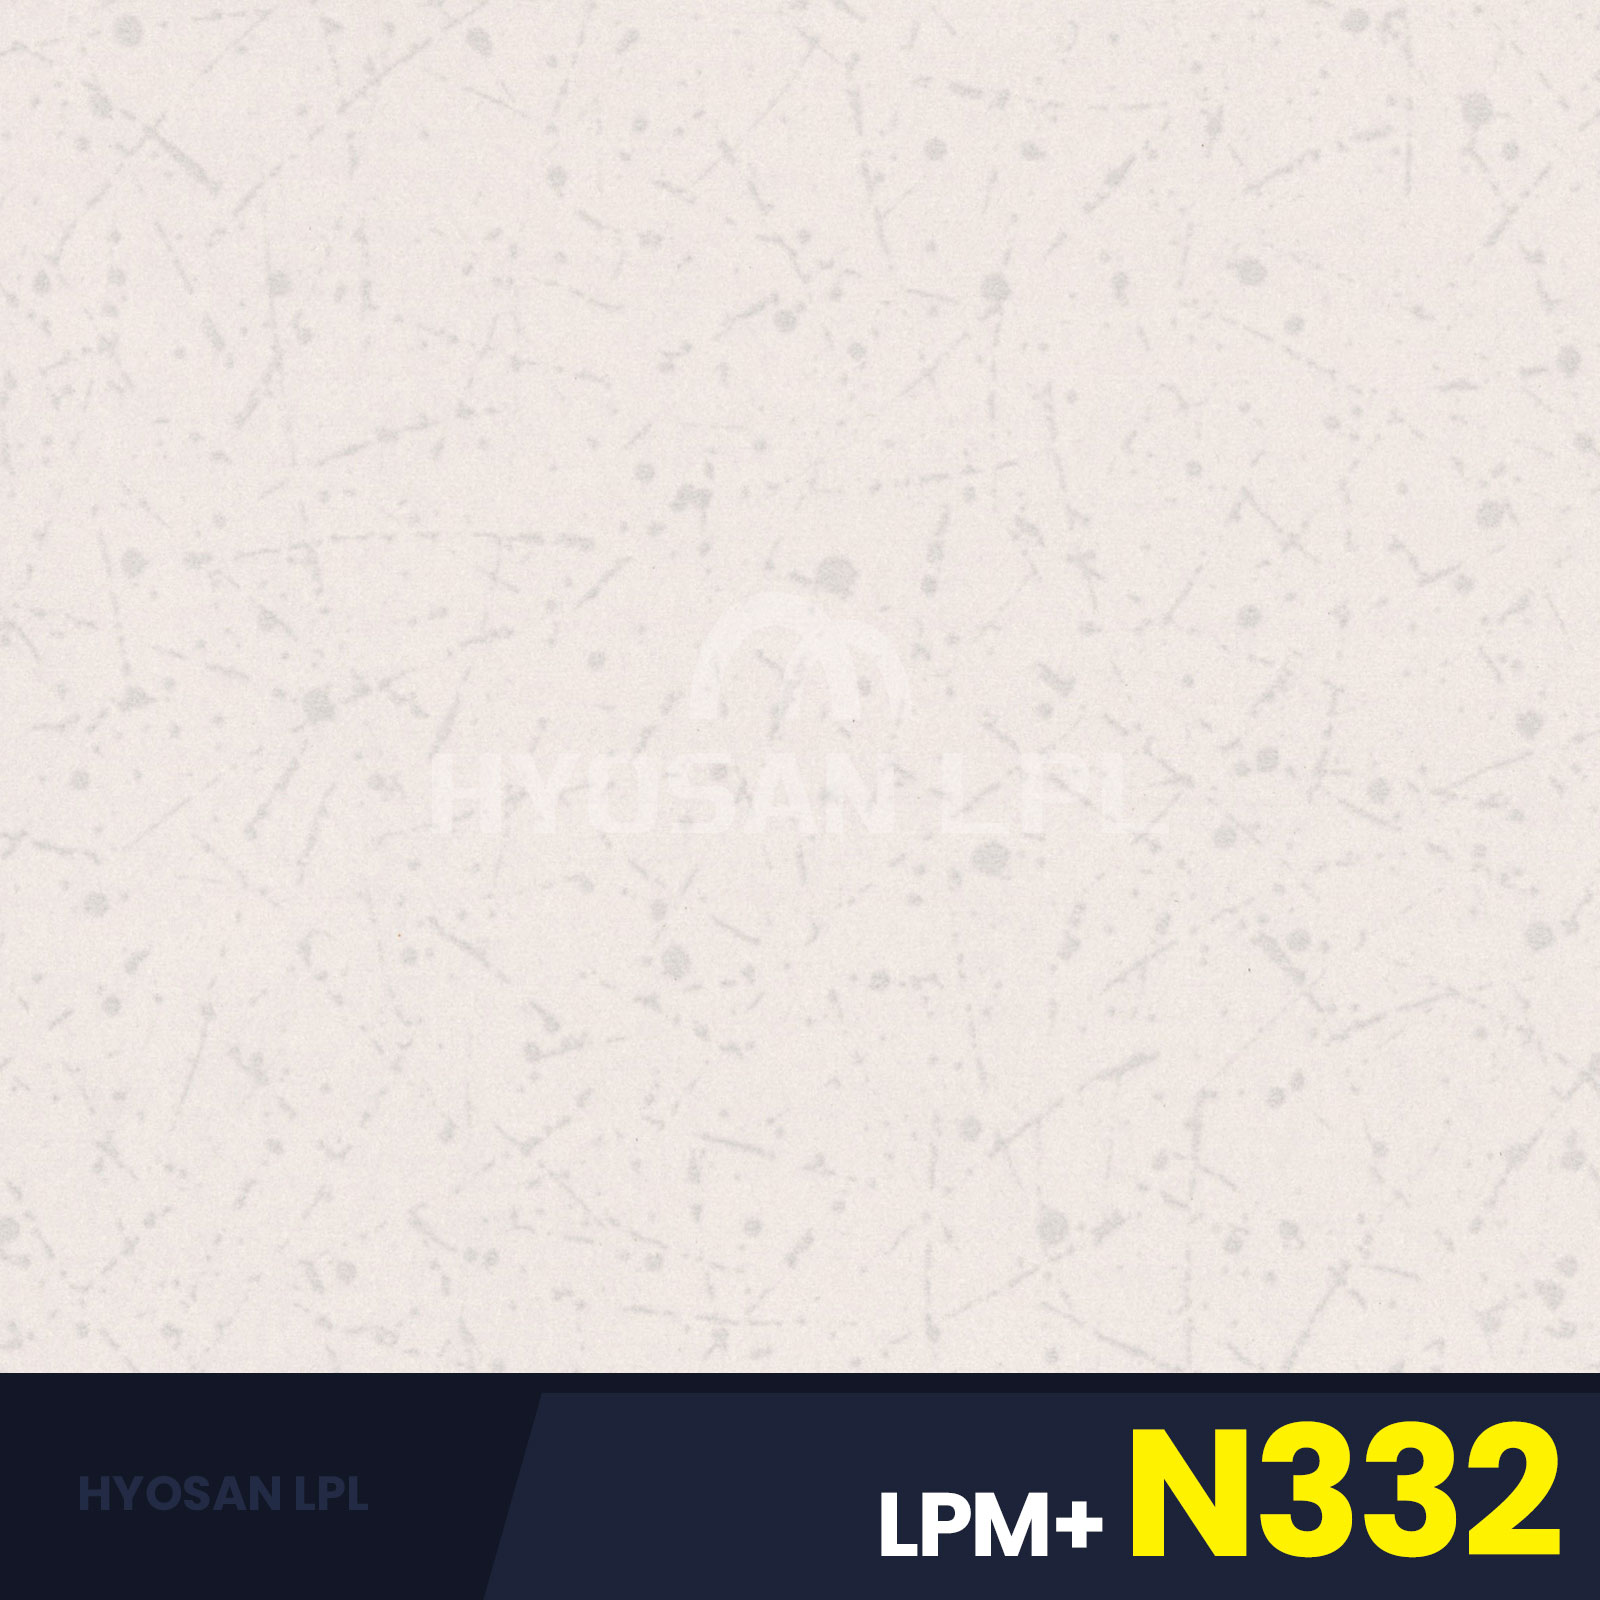 LPM+N332